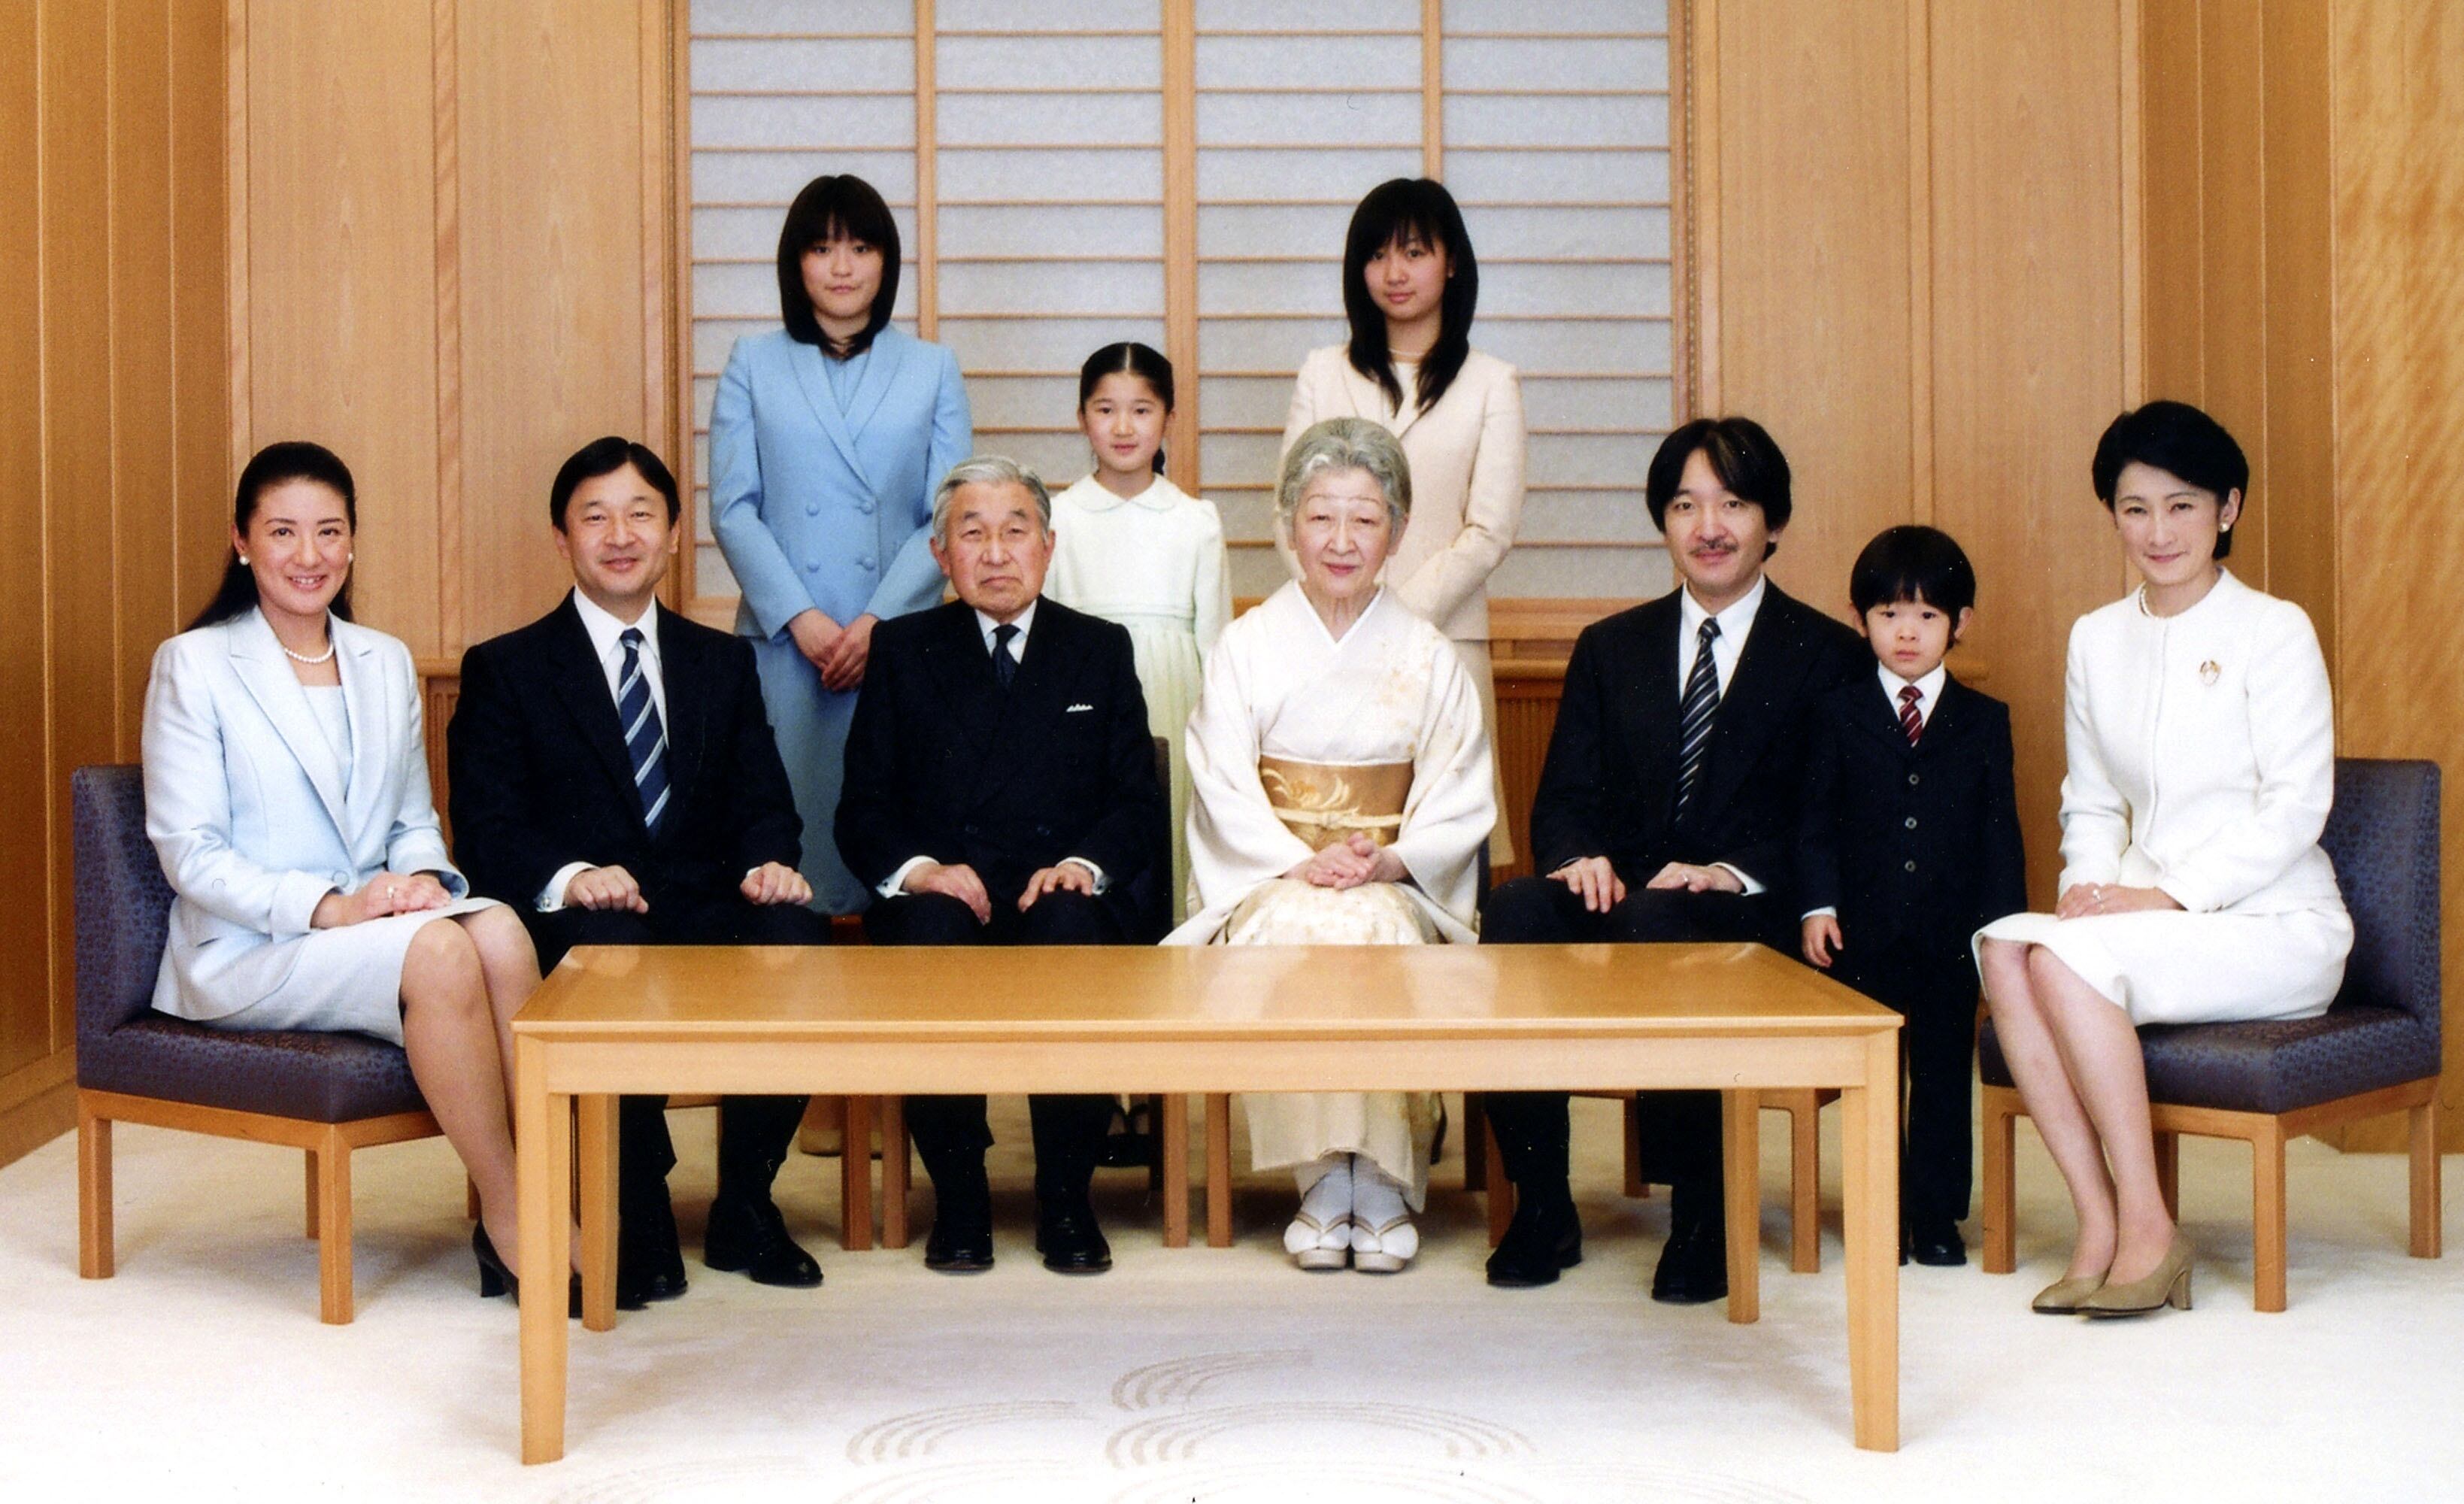 El emperador Akihito de Japón (centro izquierda) y la emperatriz Michiko (centro derecha) se reúnen con los miembros de su familia imperial en una sesión de fotos para celebrar el Año Nuevo el 14 de diciembre de 2010 en el Palacio Imperial de Tokio, Japón. También en la foto, de izquierda a derecha: los entonces príncipes herederos Masako y Naruhito, la princesa Mako, detrás de Akihito, la princesa Aiko, la princesa Kako, el príncipe Akishino, el príncipe Hisahito y la princesa Kiko.